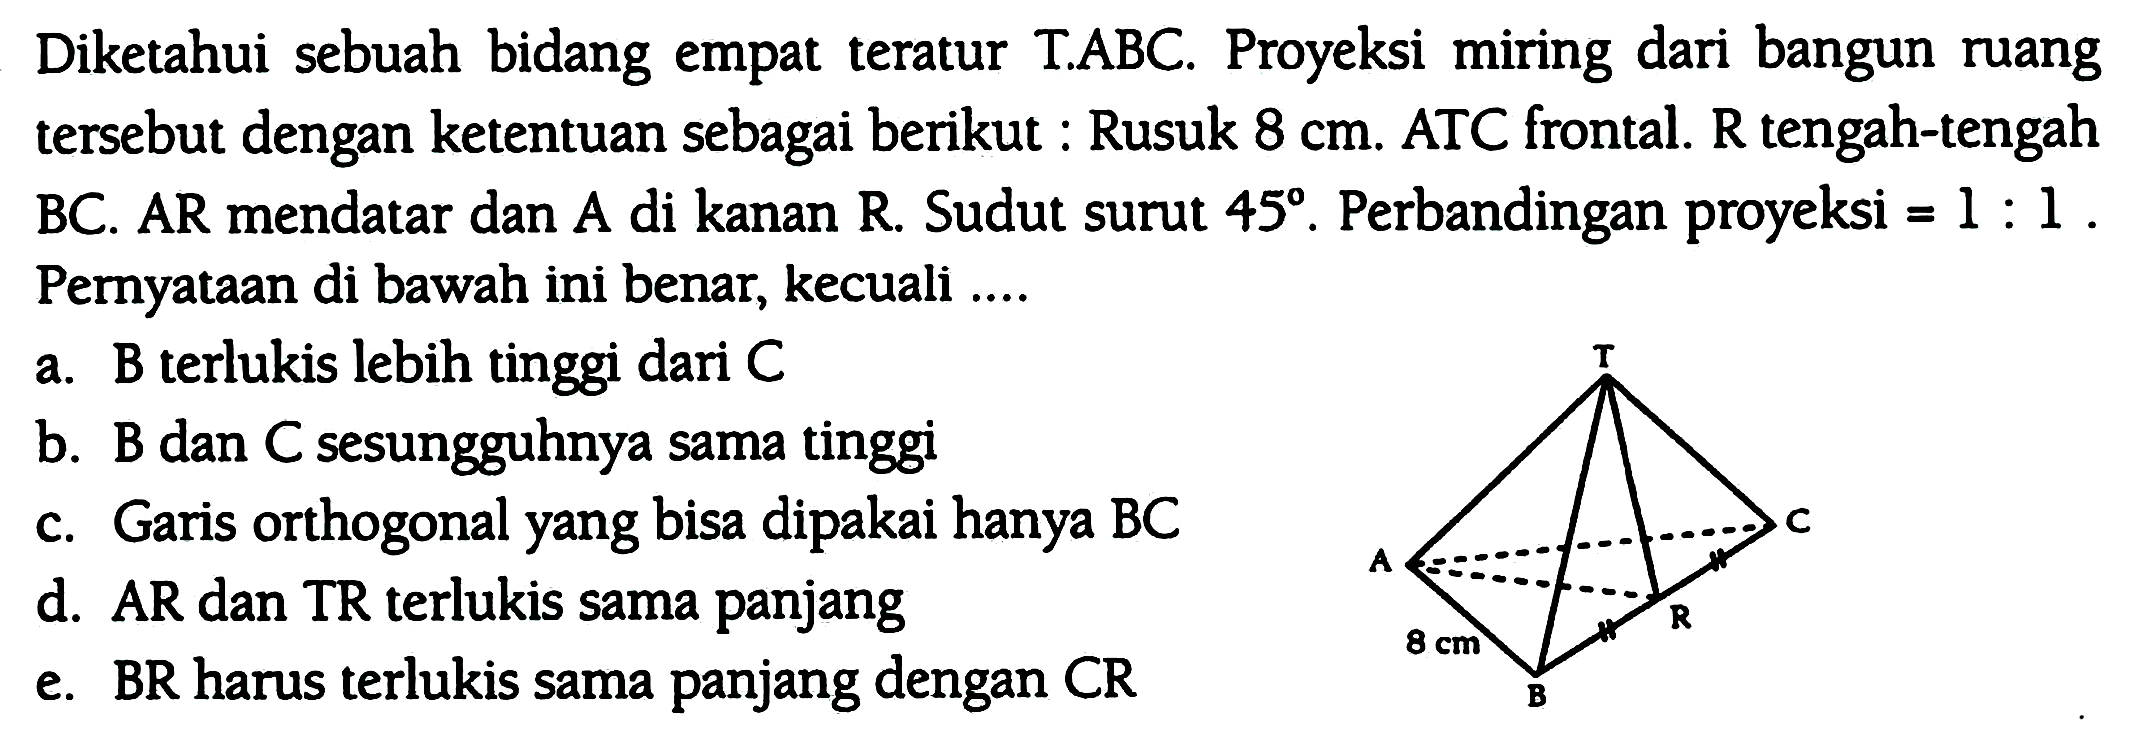 Diketahui sebuah bidang empat teratur T.ABC. Proyeksi miring dari bangun ruang tersebut dengan ketentuan sebagai berikut : Rusuk  8 cm . ATC frontal. R tengah-tengah BC. AR mendatar dan A di kanan R. Sudut surut  45 . Perbandingan proyeksi =  1: 1 . Pernyataan di bawah ini benar, kecuali ....
a. B terlukis lebih tinggi dari  C 
b. B dan C sesungguhnya sama tinggi
c. Garis orthogonal yang bisa dipakai hanya BC
d. AR dan TR terlukis sama panjang
e. BR harus terlukis sama panjang dengan  C R 